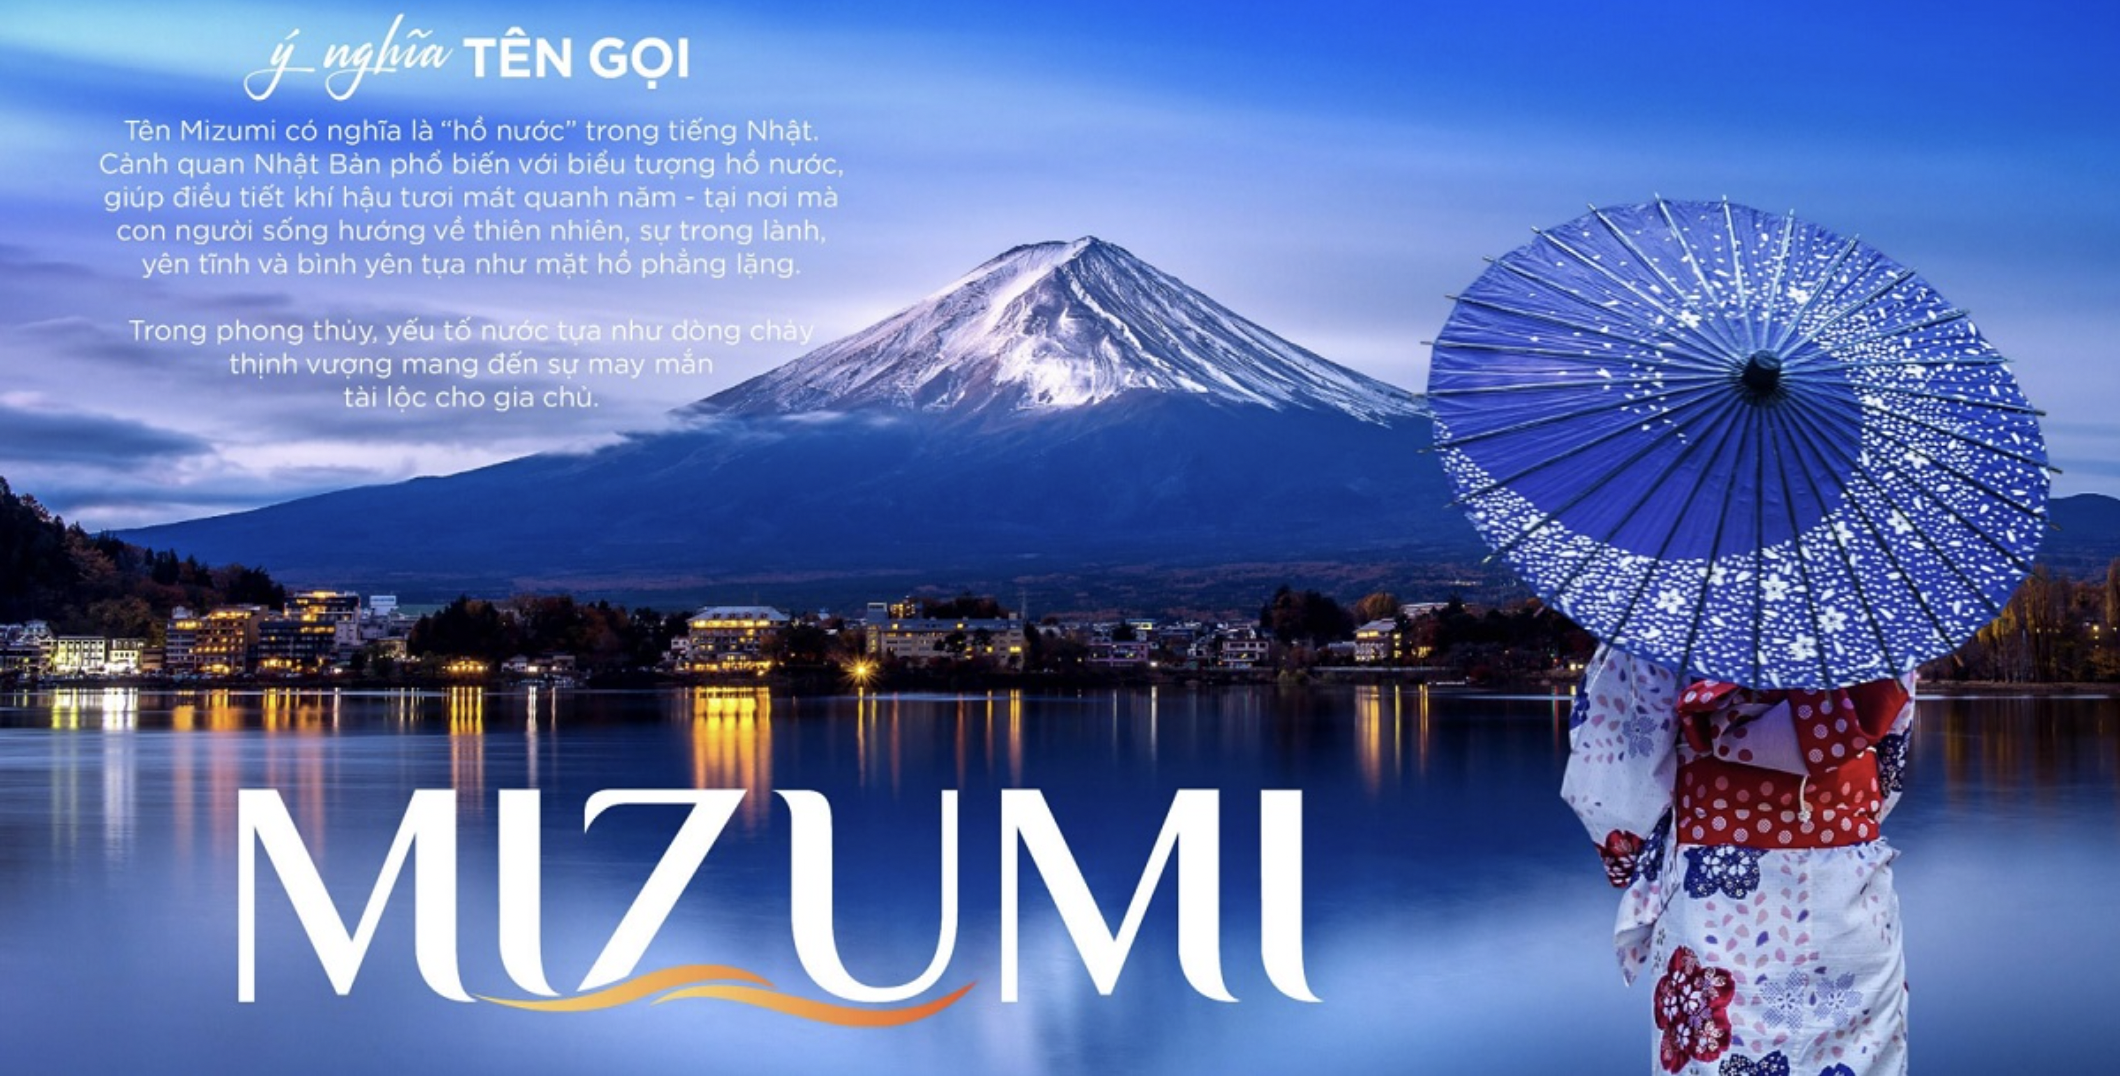 MIZUMI - Nhật bản thu nhỏ tại siêu thành phố biển, sức khoẻ và du lịch Novaworld Phan Thiết